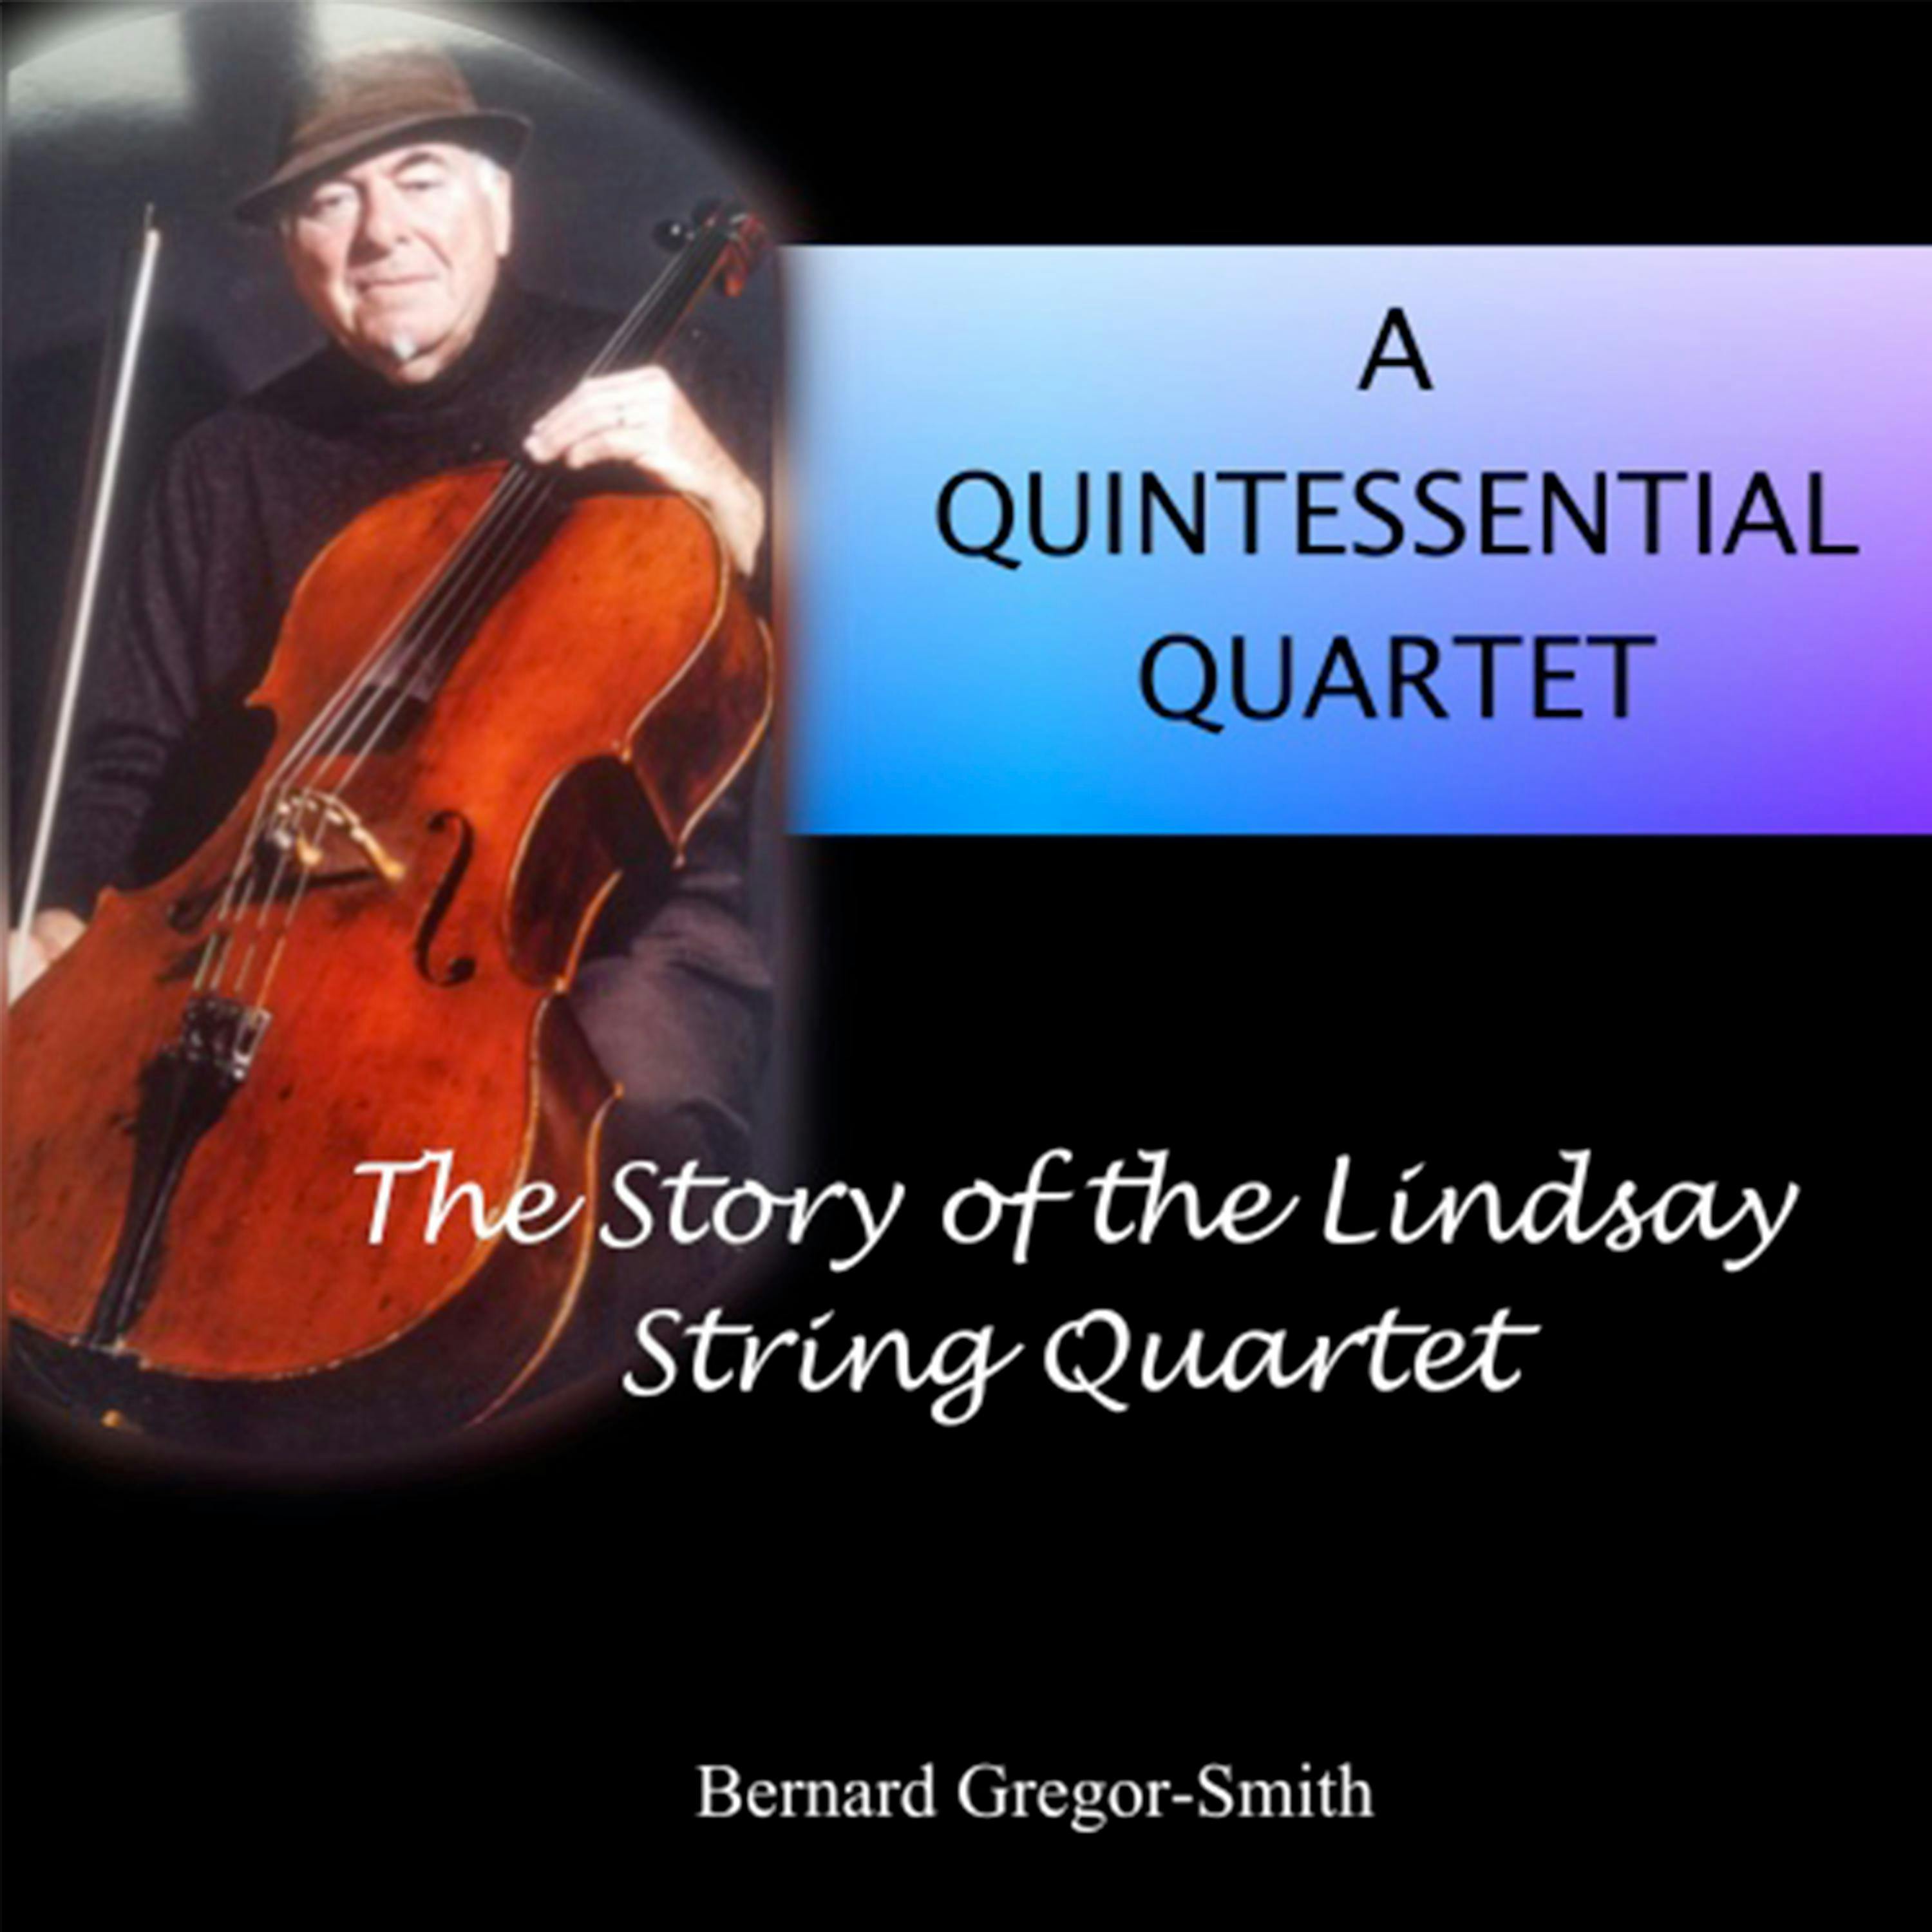 A Quintessential Quartet: The Story of the Lindsay String Quartet - Bernard Gregor-Smith